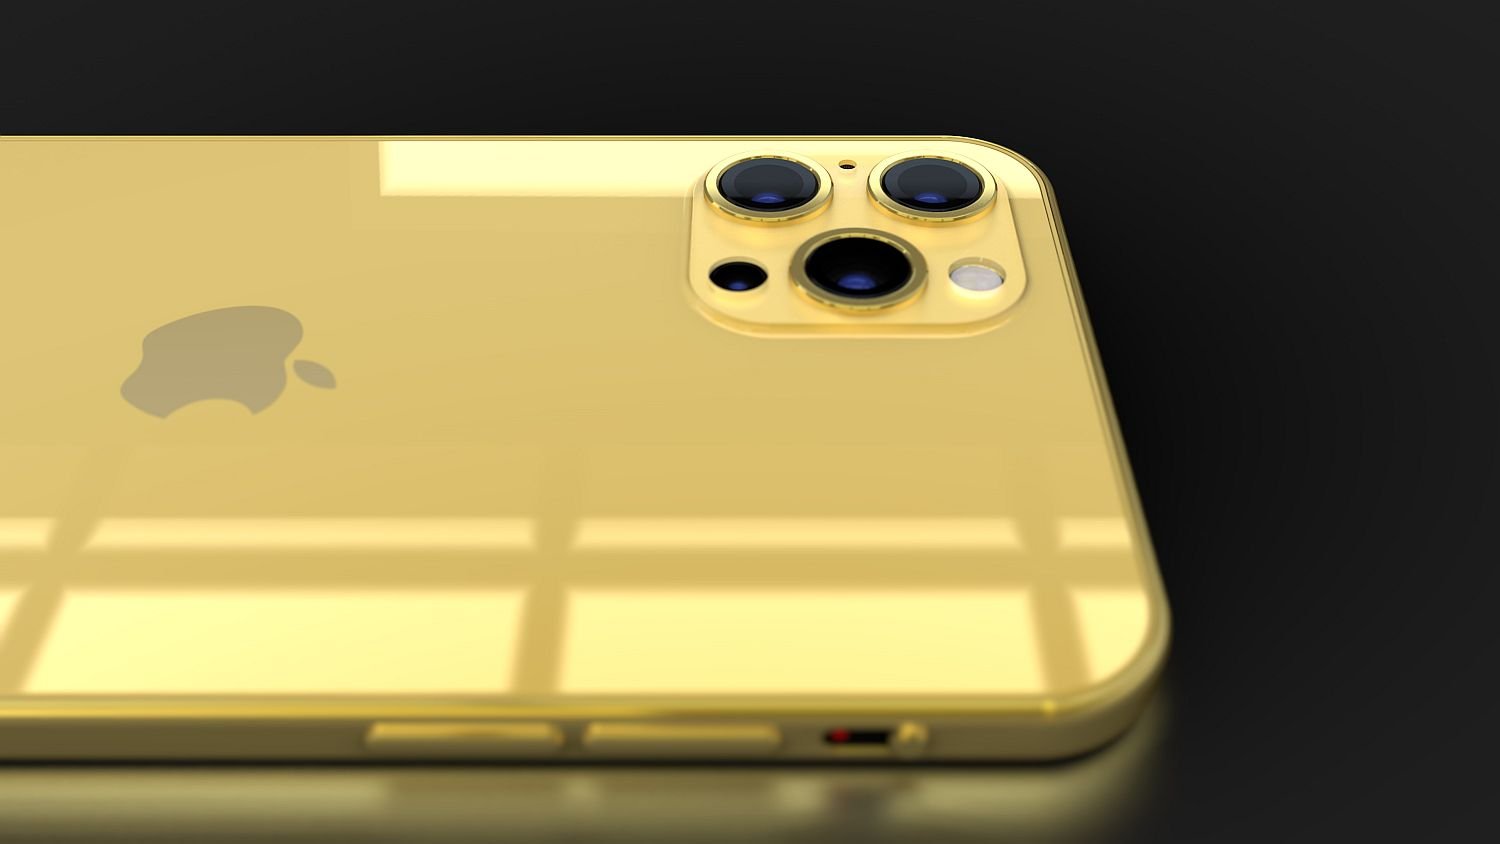 iphone 12 Pro Max concept